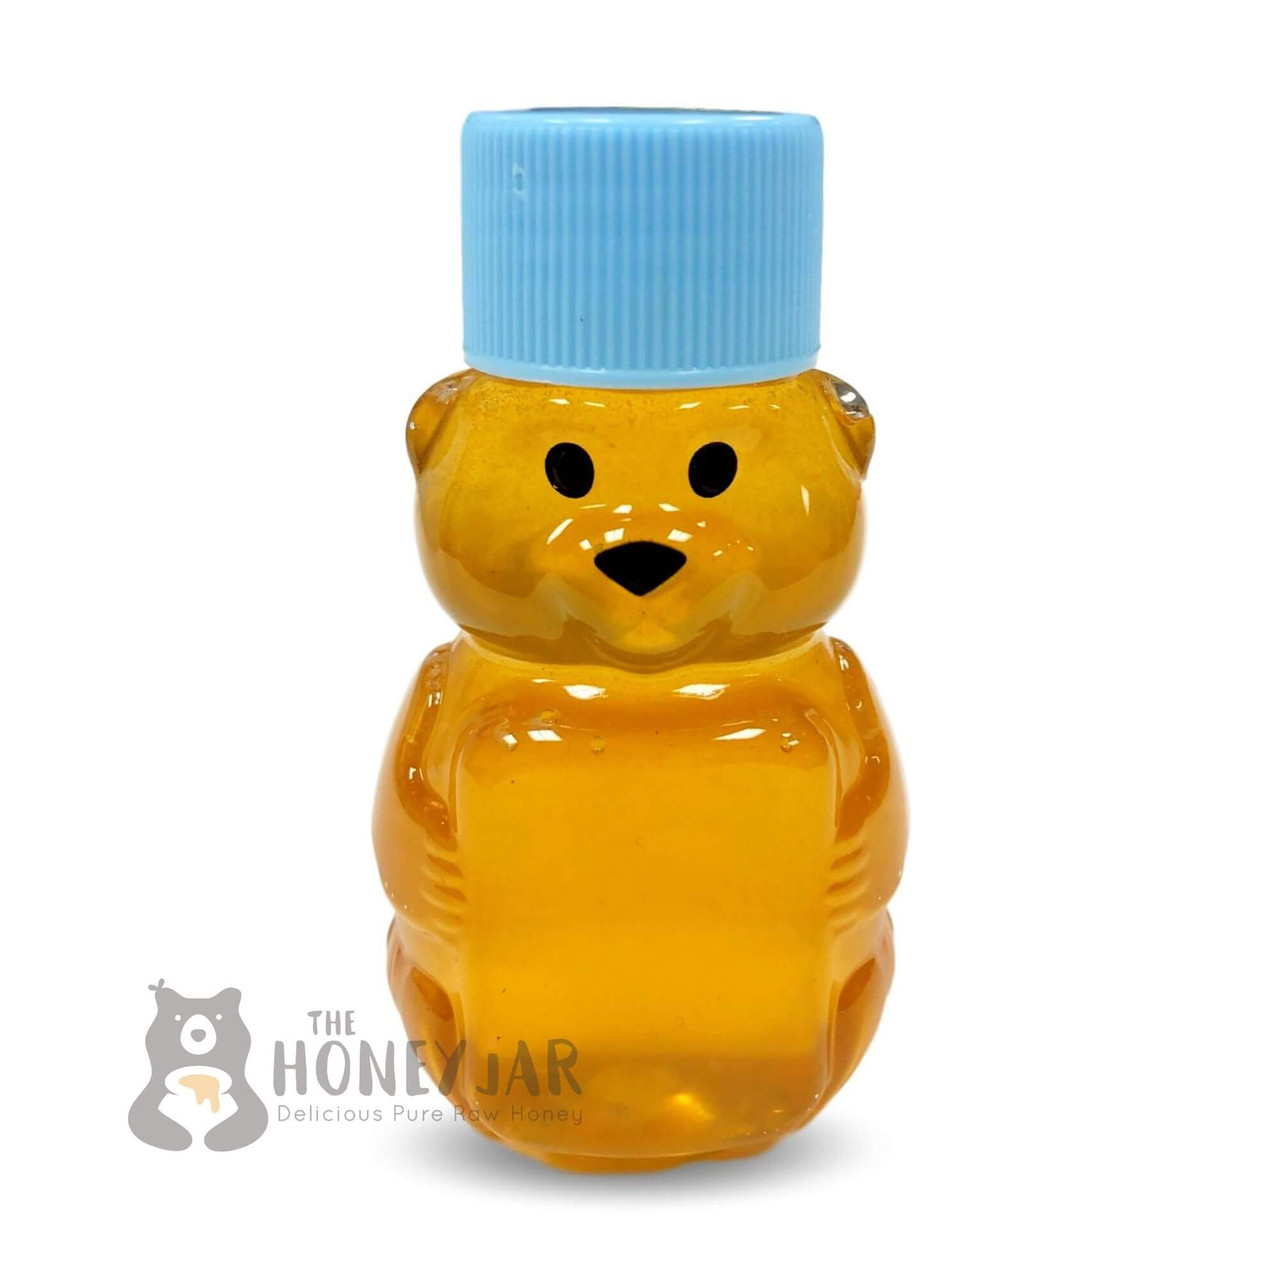 Mini Blue Honey Bear with Honey